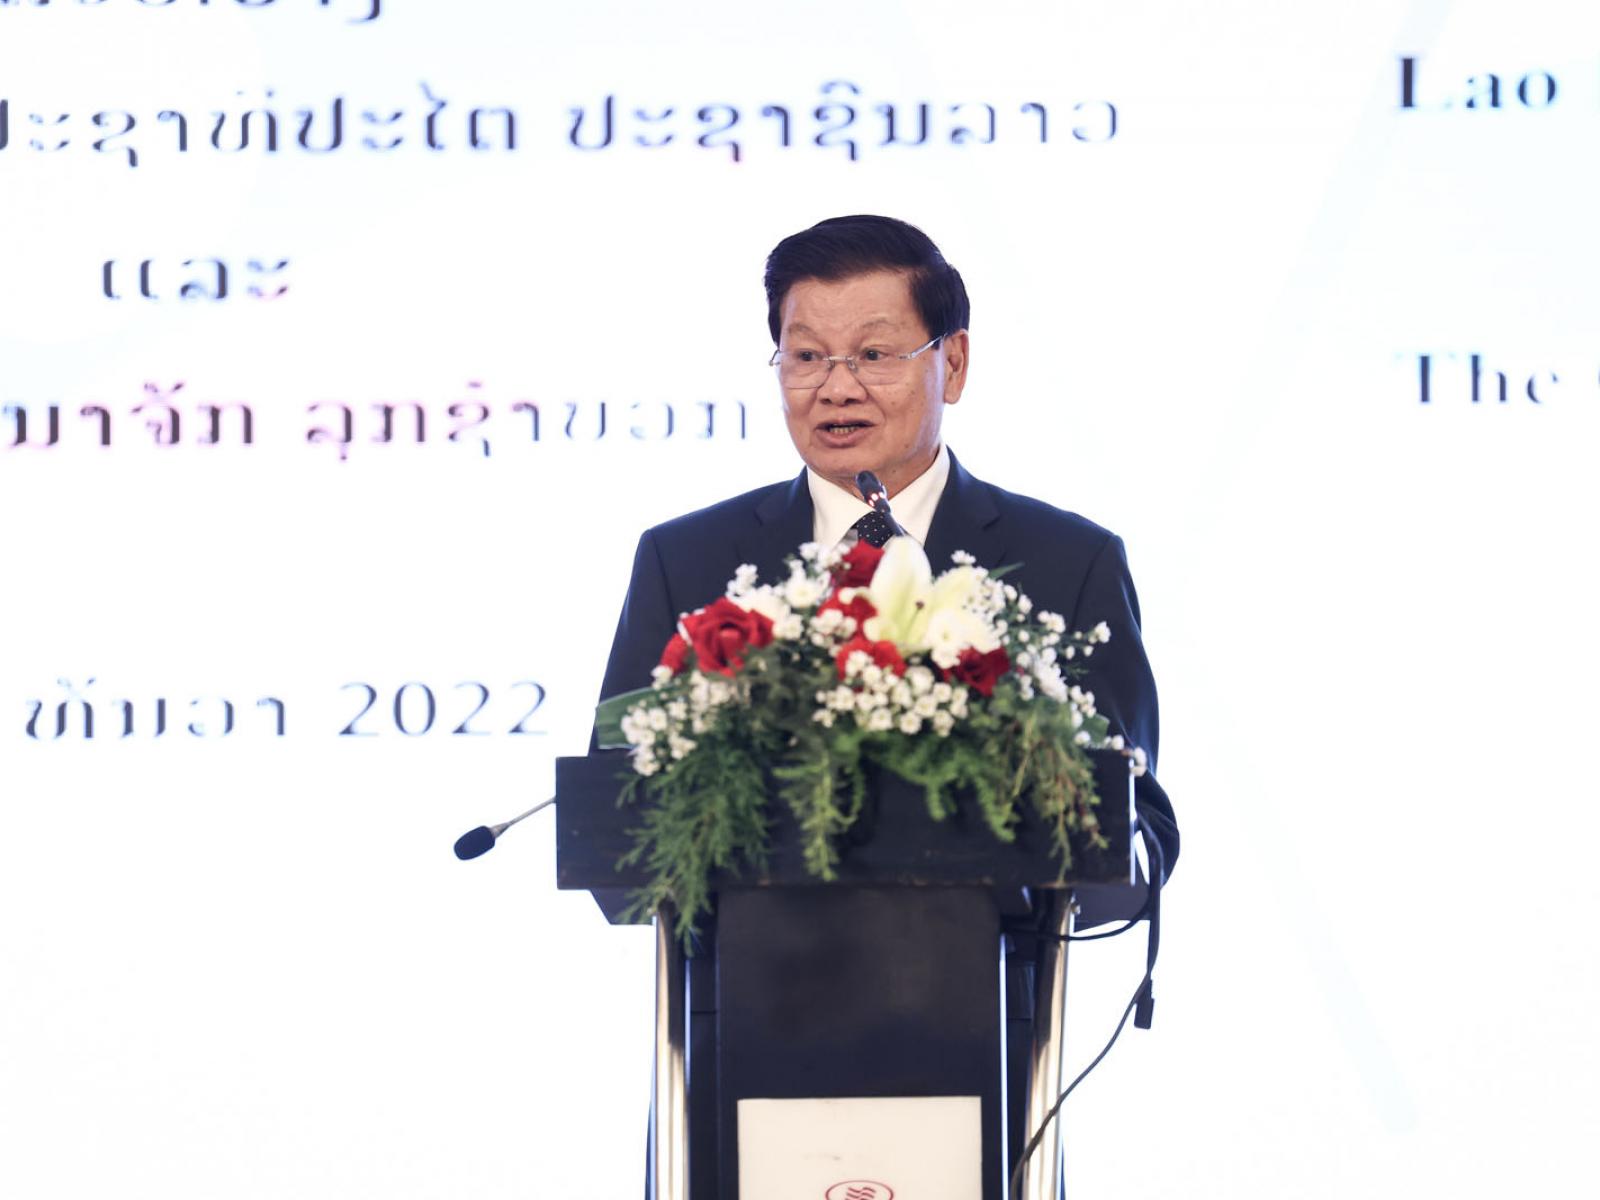 Le Président du Laos prononce un discours